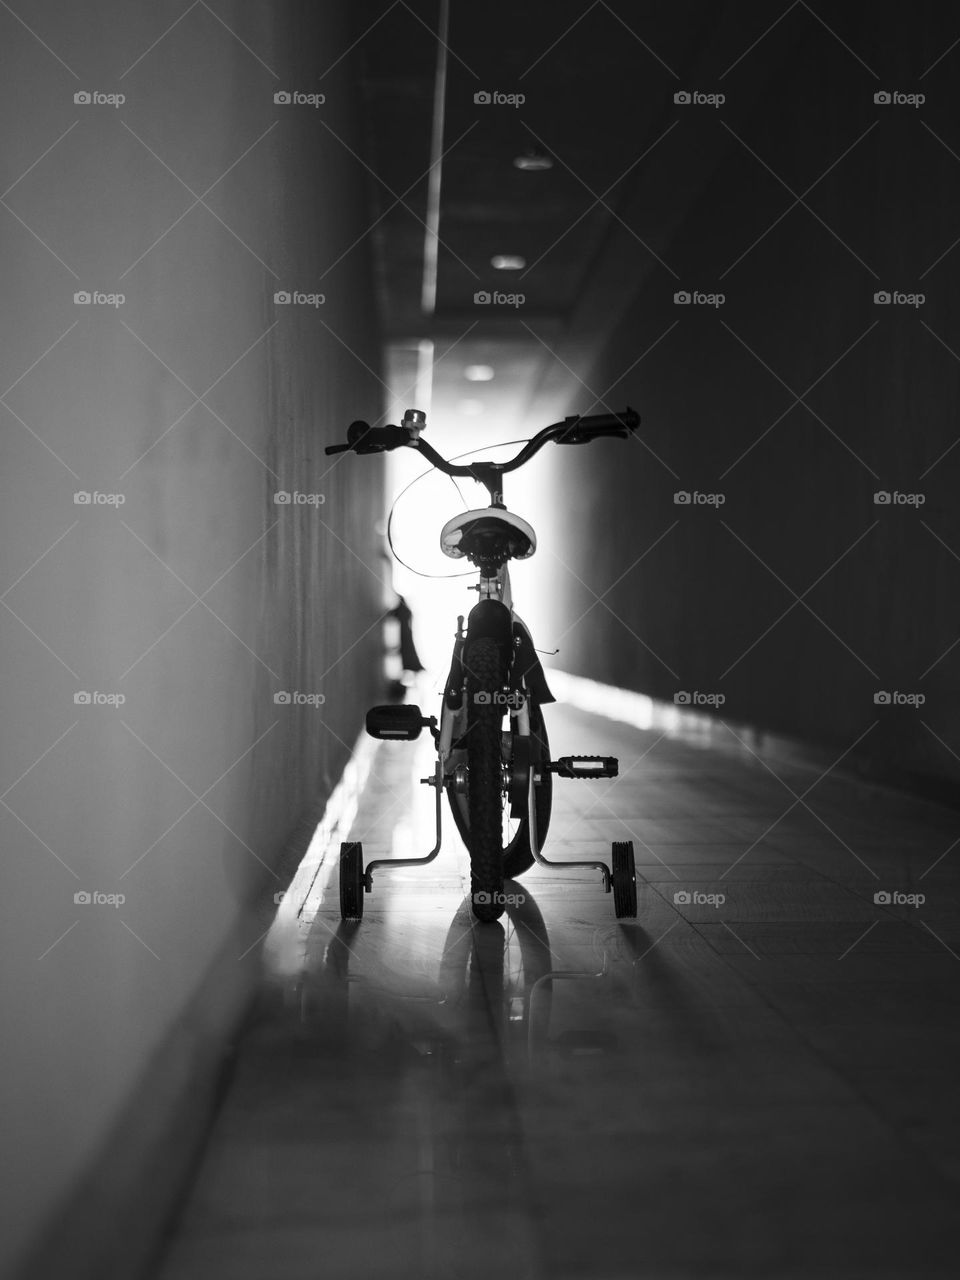 Bike in corridoor